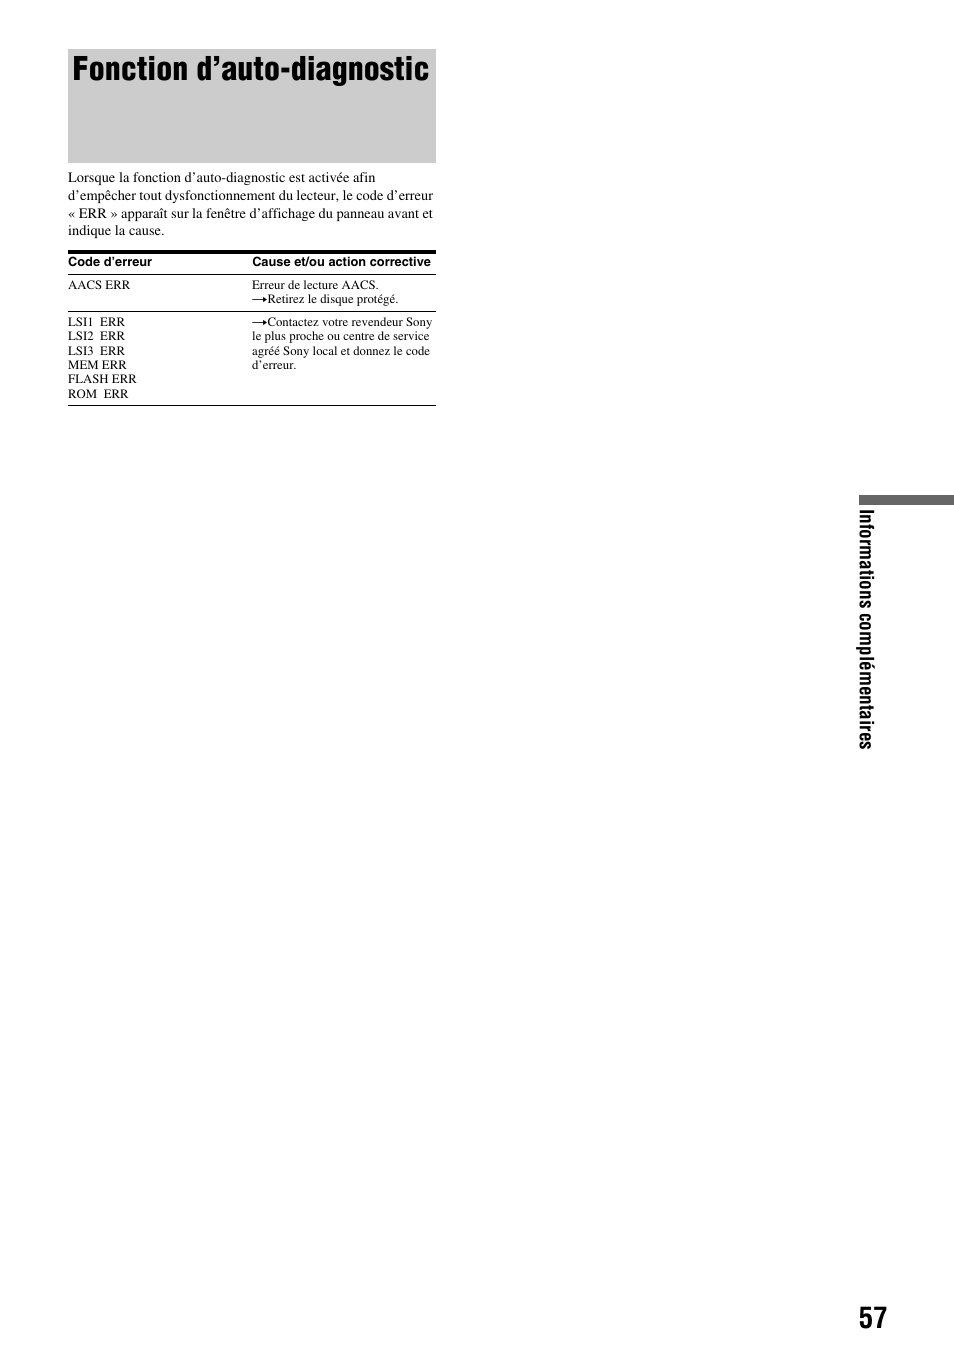 Fonction d’auto-diagnostic | Sony BDP-S300 Manuel d'utilisation | Page 57 / 67